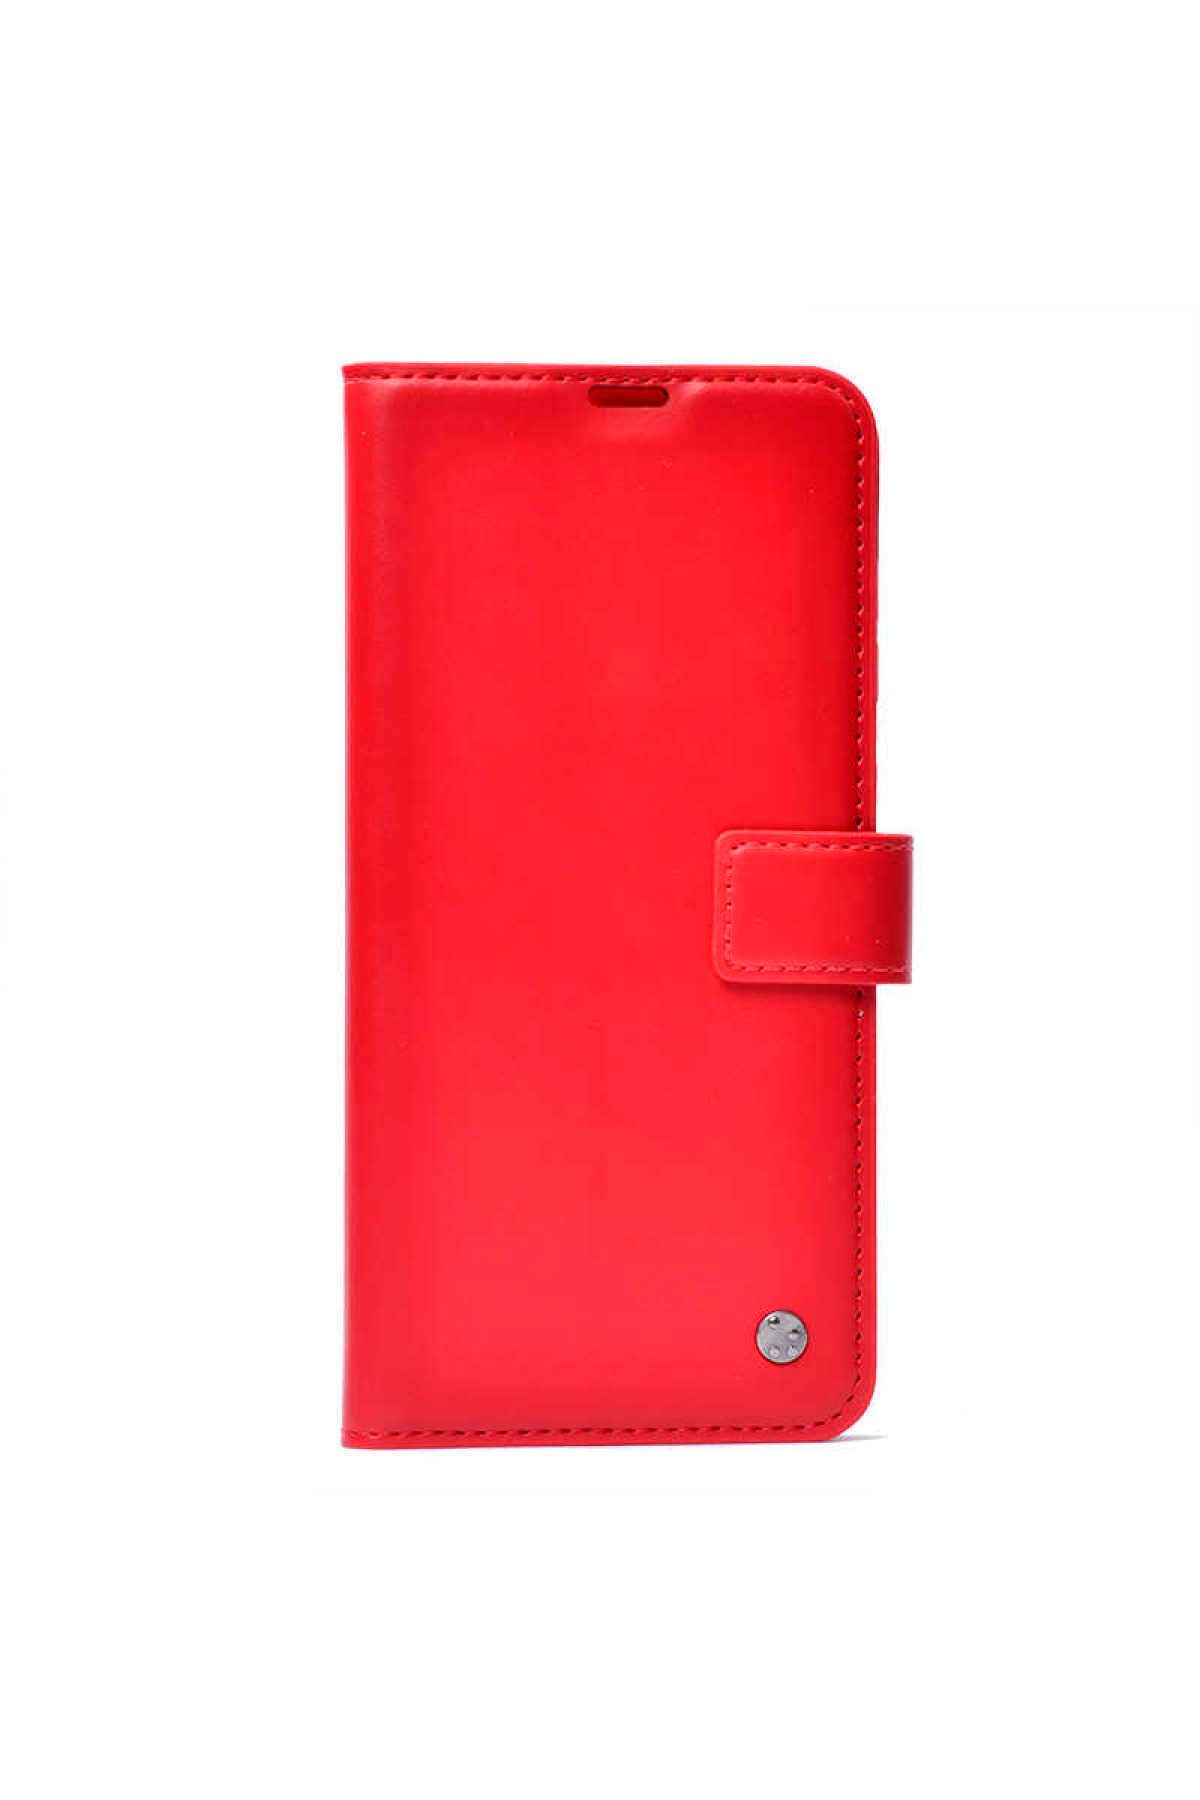 İzmirimStore Apple Iphone 11 Pro Cüzdanlı Kapaklı Kırmızı Kılıf